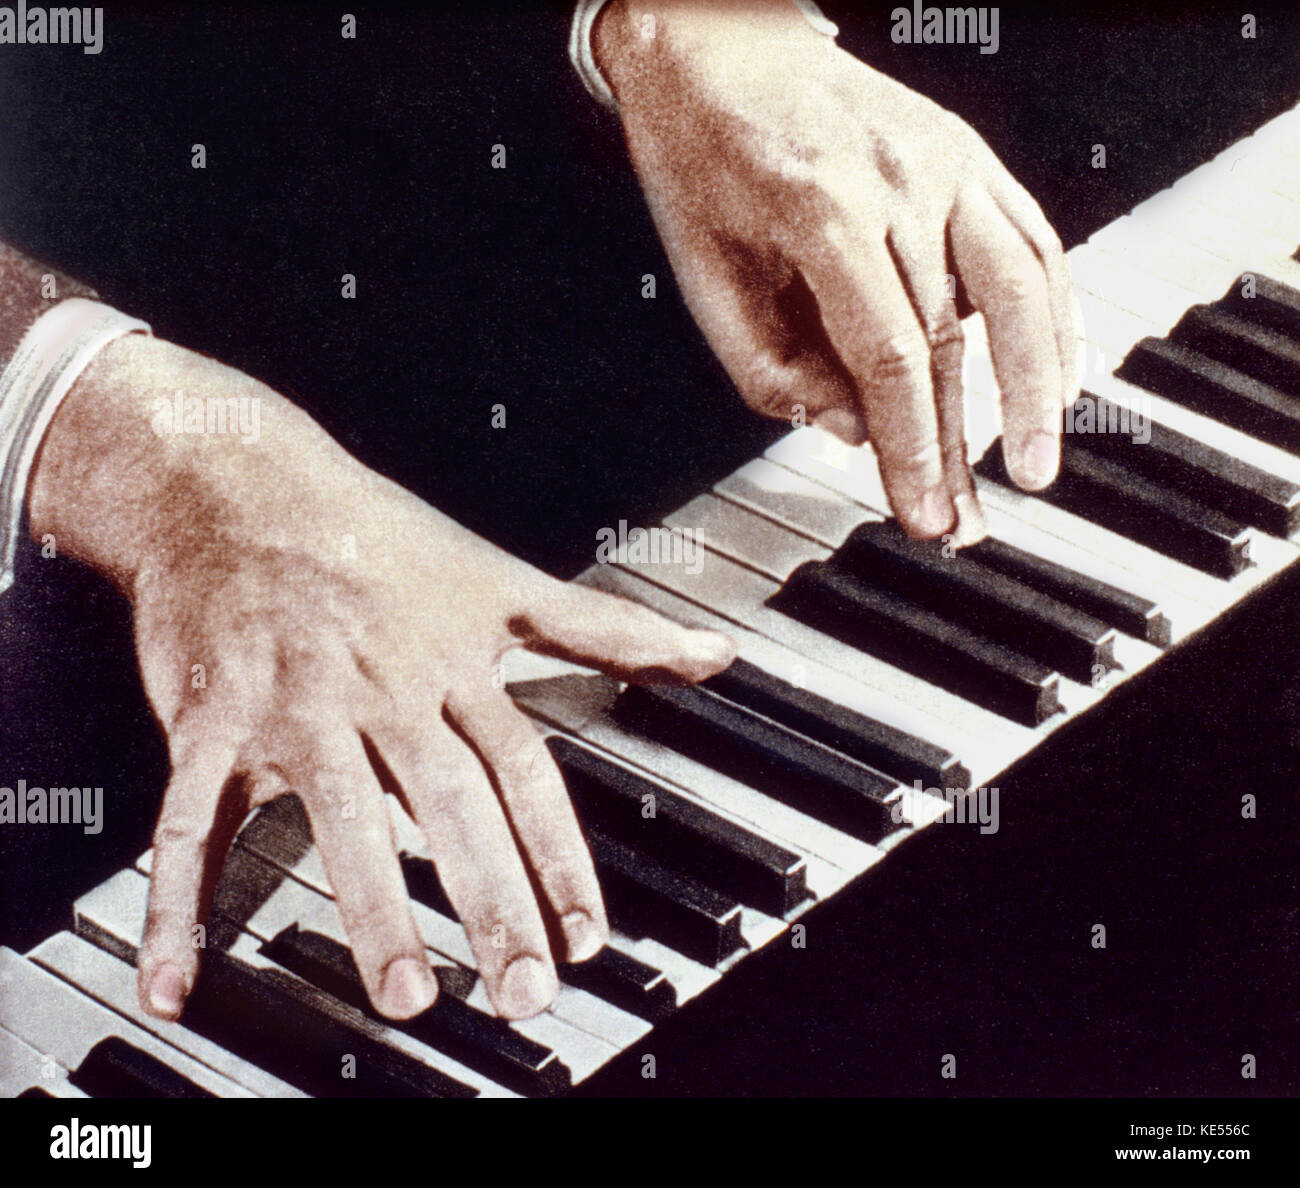 PROKOFIEV, Sergueï Sergueïevitch - ses mains jouant du piano clavier. Compositeur russe 27 avril 1891 - 5 mars 1953. Version colorisée. Banque D'Images